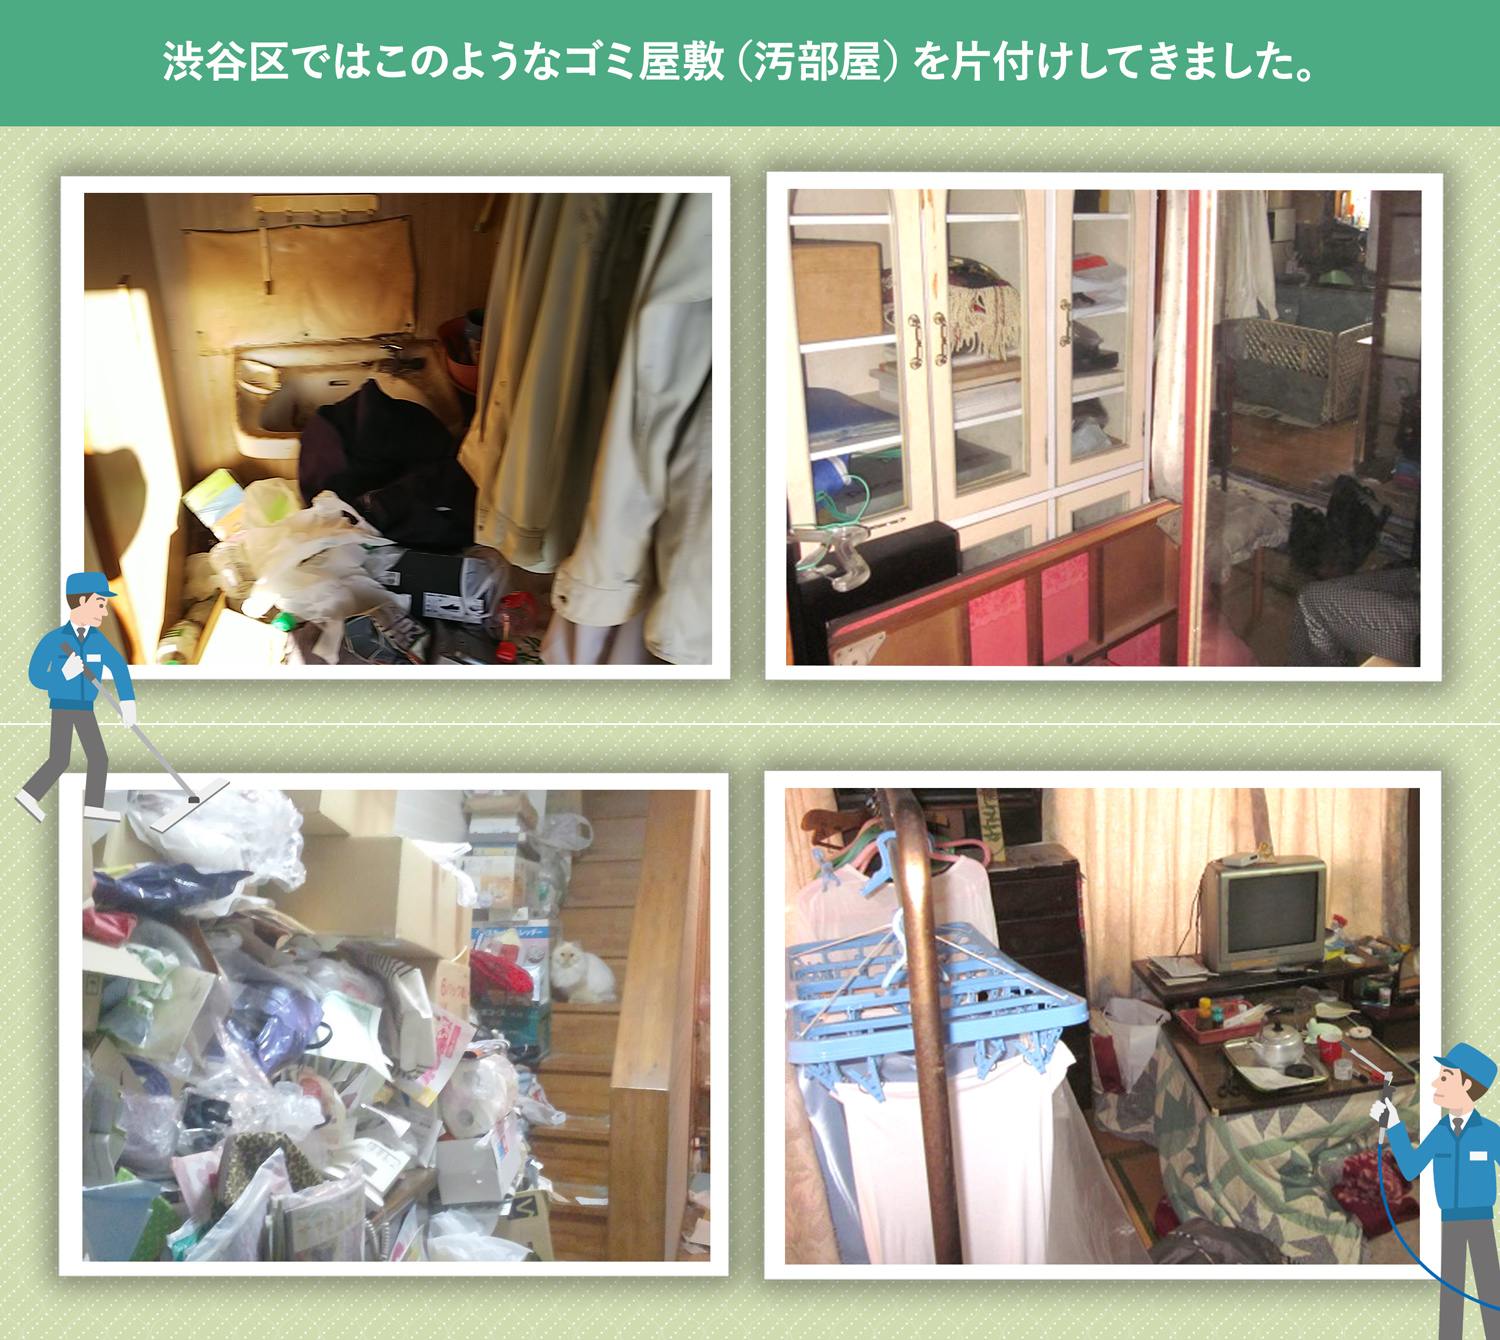 渋谷区で行ったで行ったごみ屋敷・汚部屋の片付けの一例